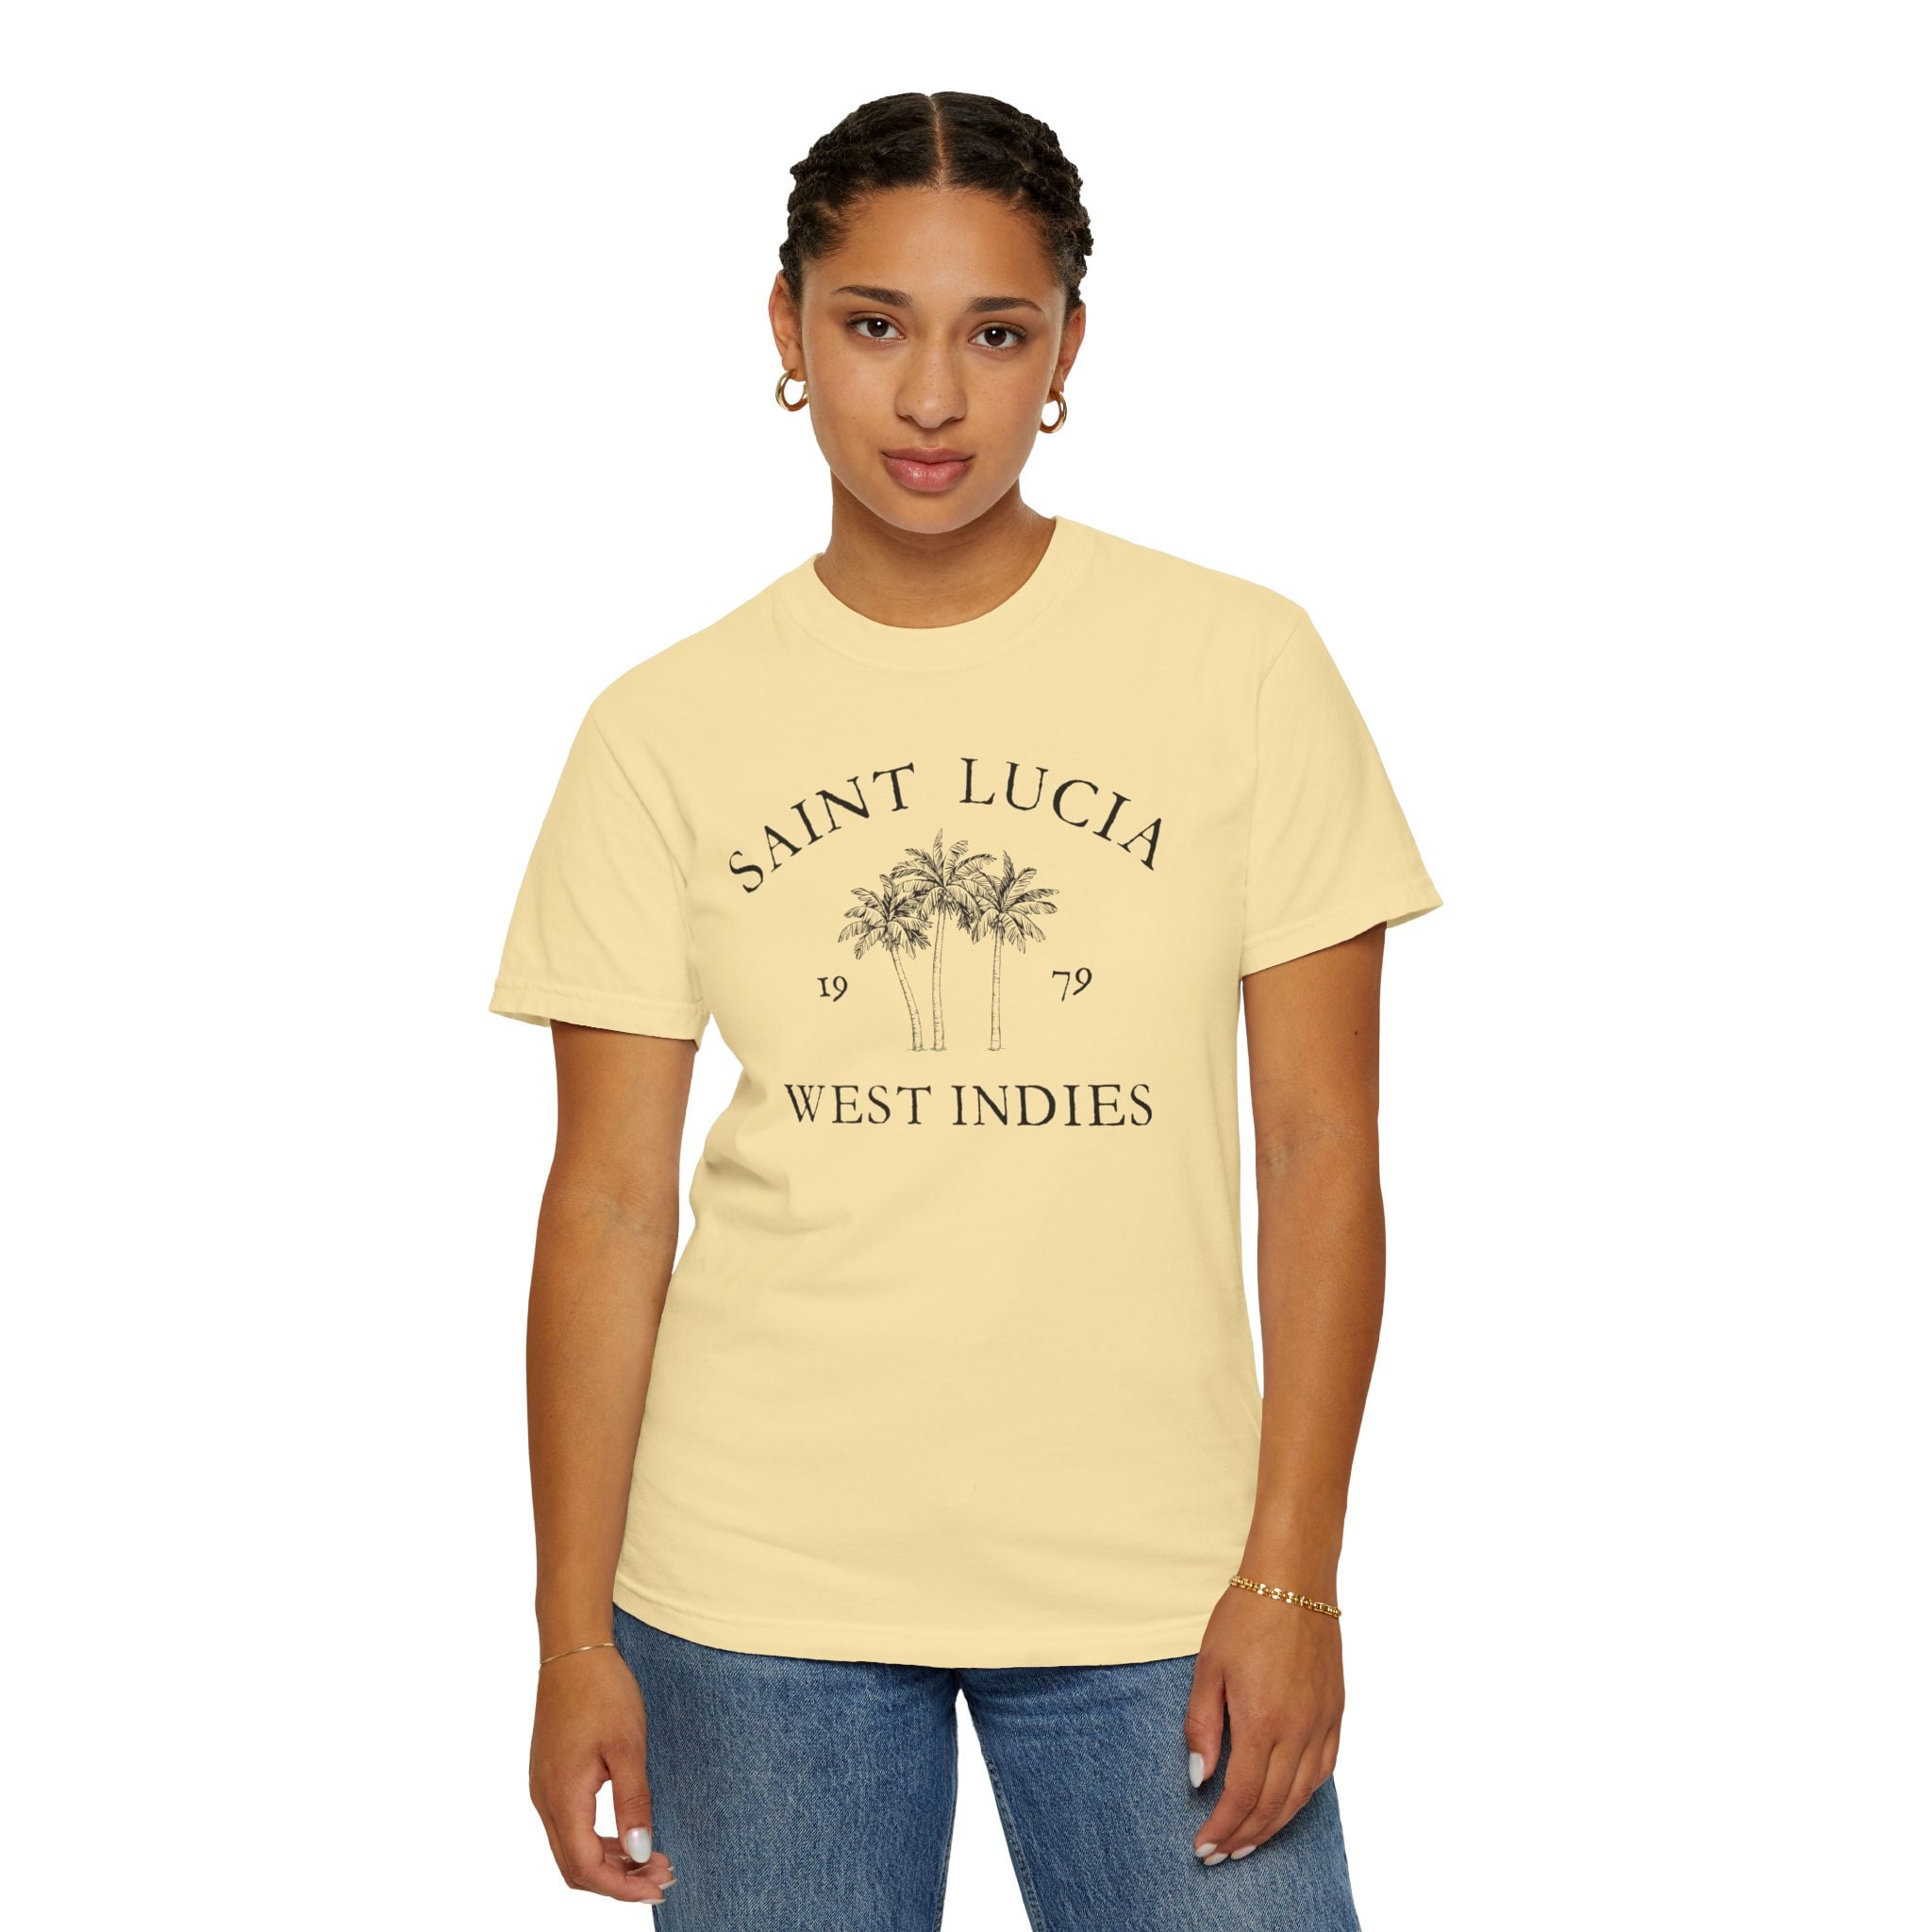 Saint Lucia Vintage-style T-shirt, Comfort Colors, Unisex Garment